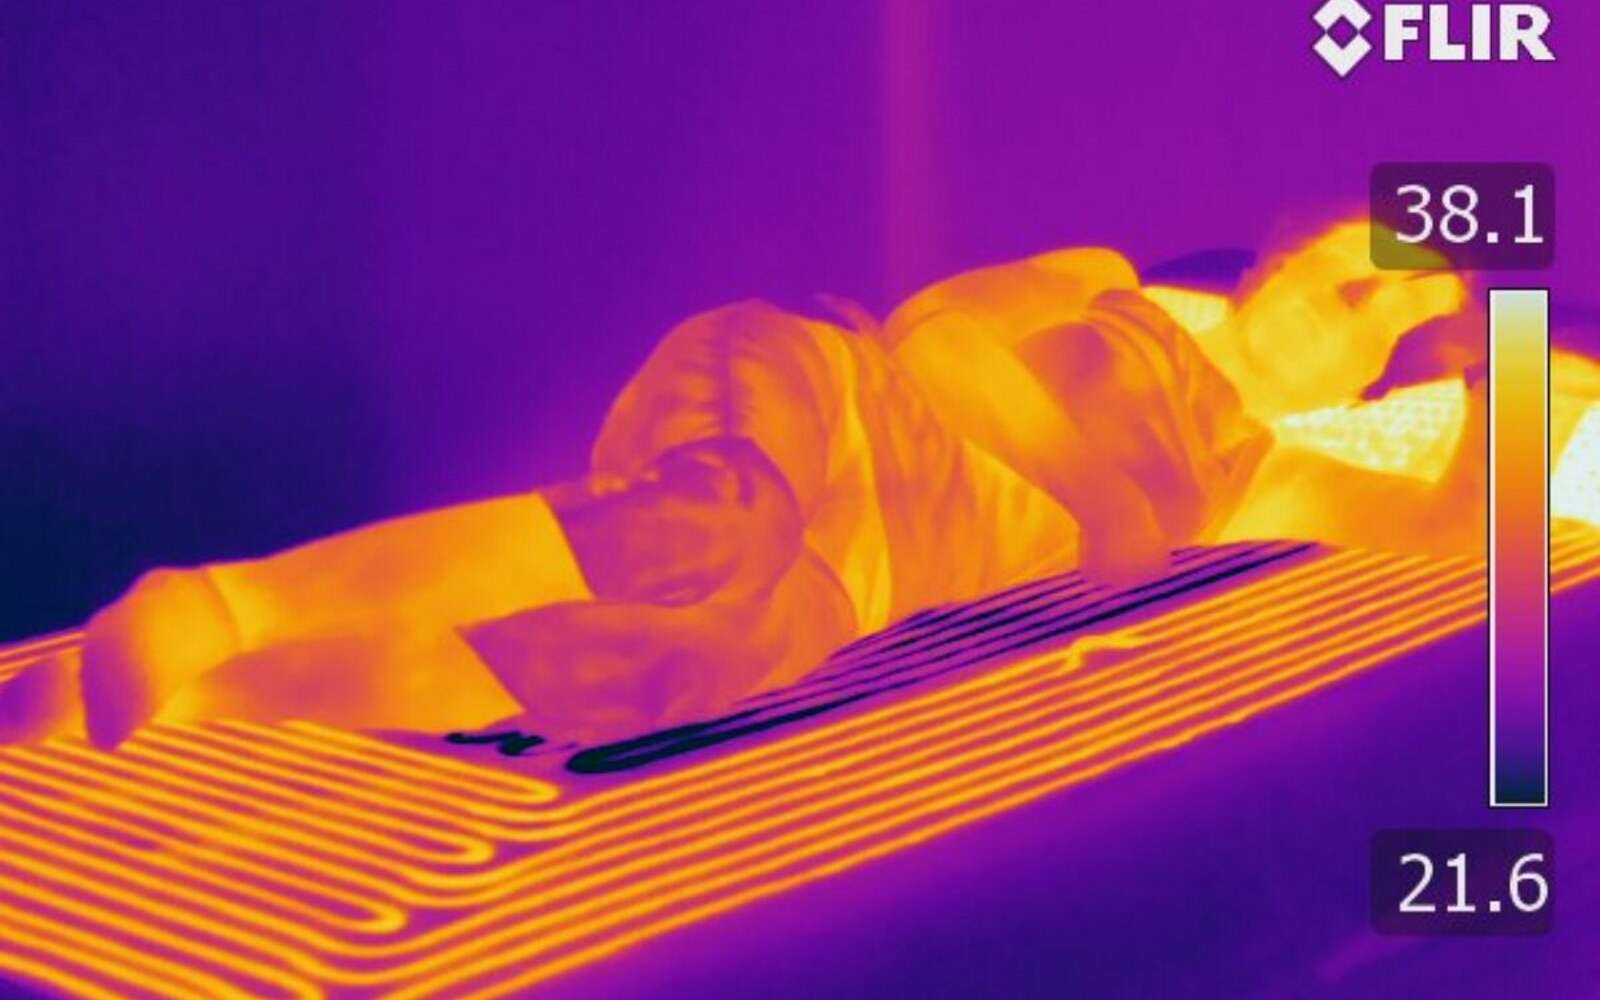 Ce matelas utilise des zones chaudes et froides pour favoriser l’endormissement et la qualité du sommeil. © Université de Texas à Austin